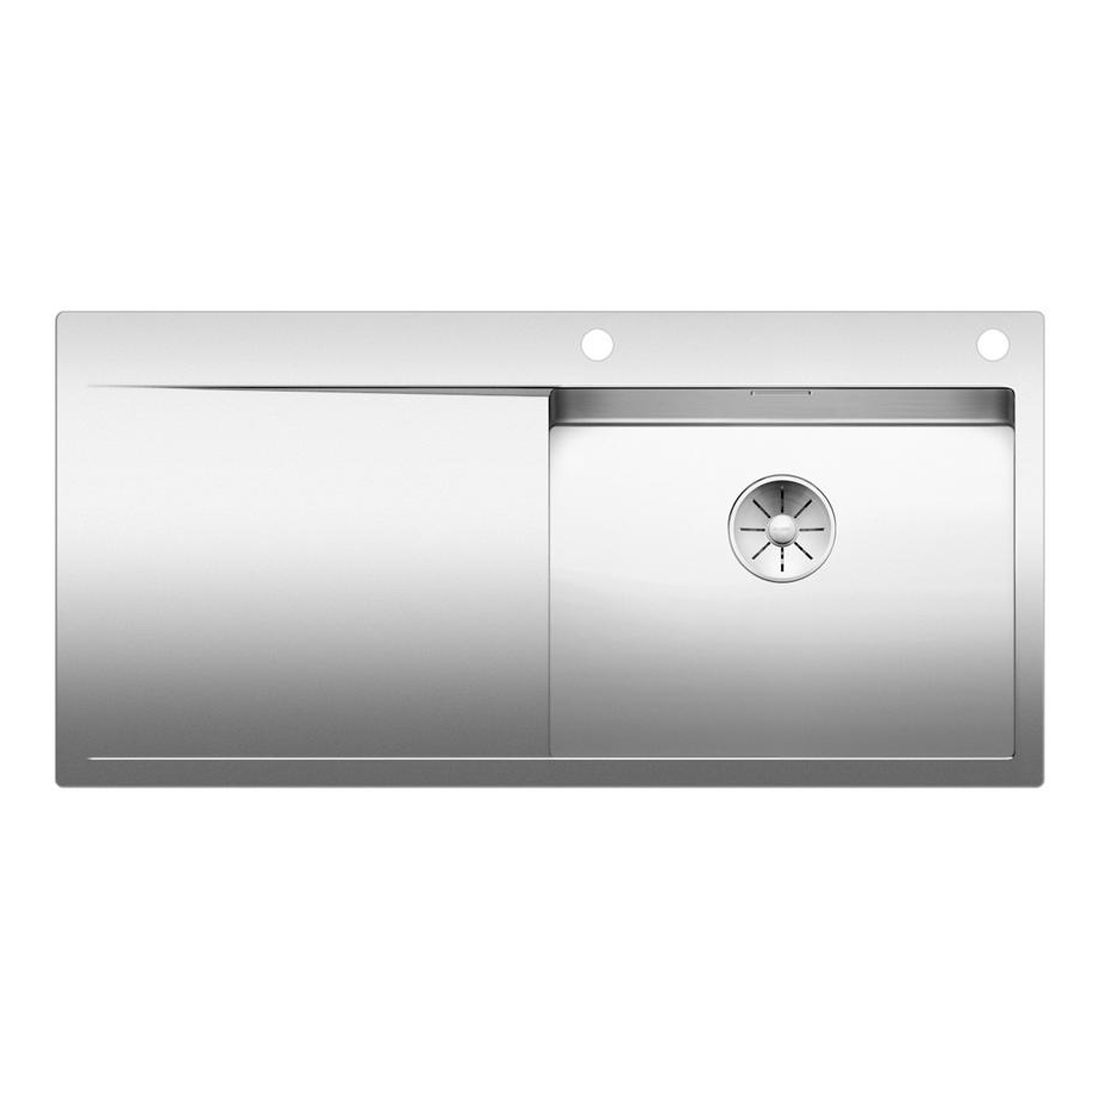 Кухонная мойка Blanco Flow XL 6S-IF полированная сталь набор аксессуаров inda indissima barra 200ans сталь